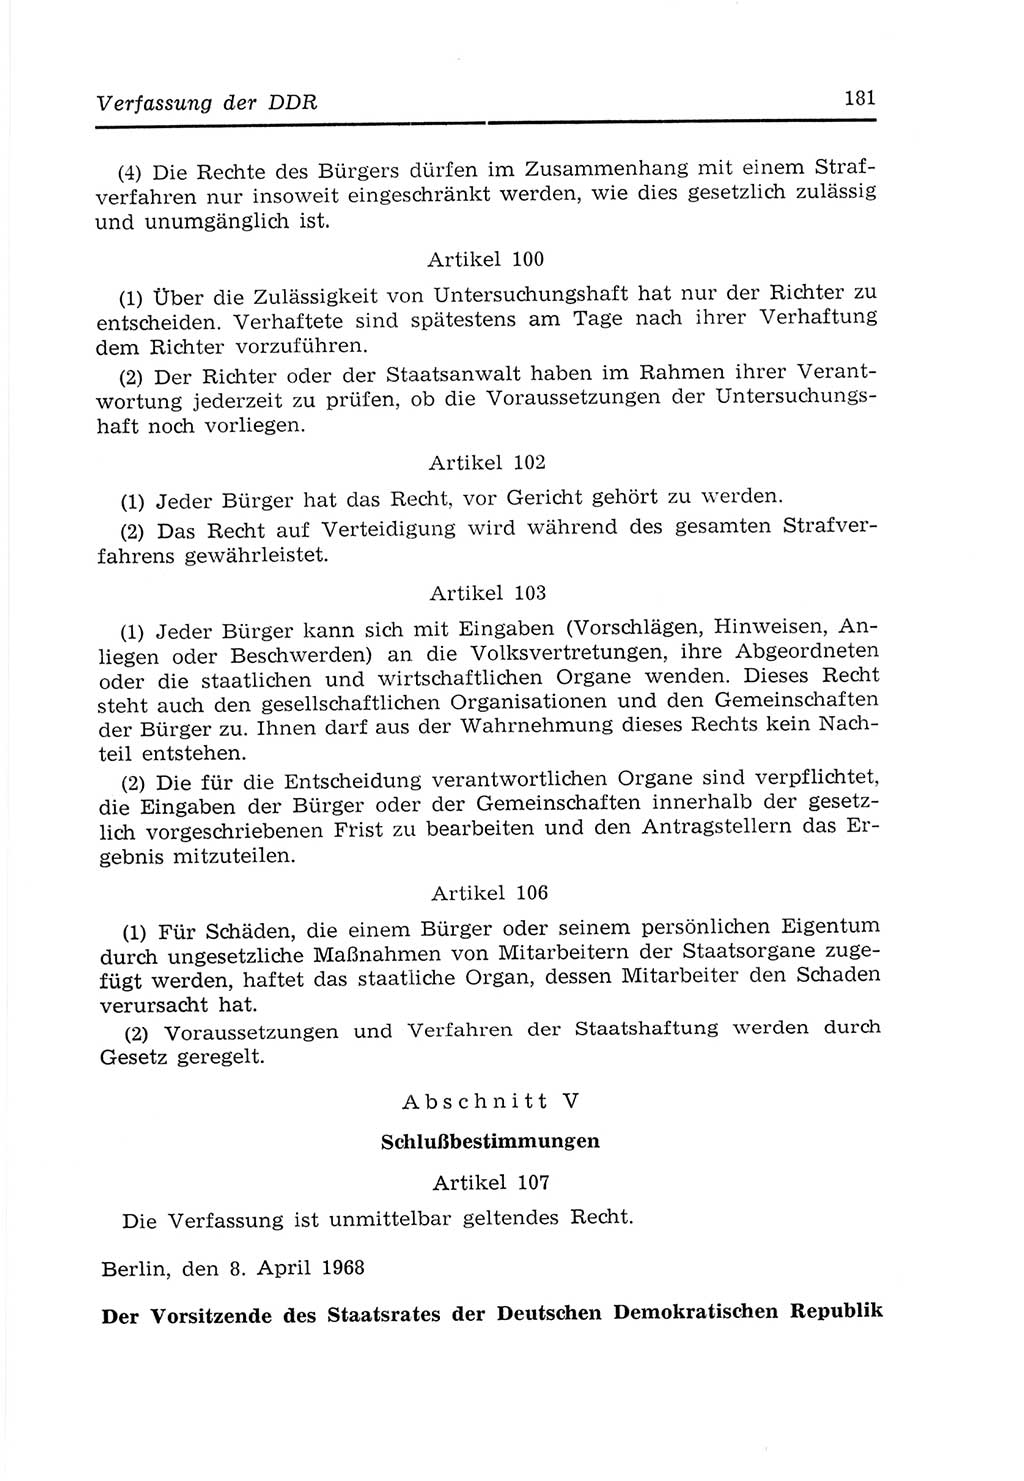 Strafvollzugs- und Wiedereingliederungsgesetz (SVWG) der Deutschen Demokratischen Republik (DDR) 1968, Seite 181 (SVWG DDR 1968, S. 181)